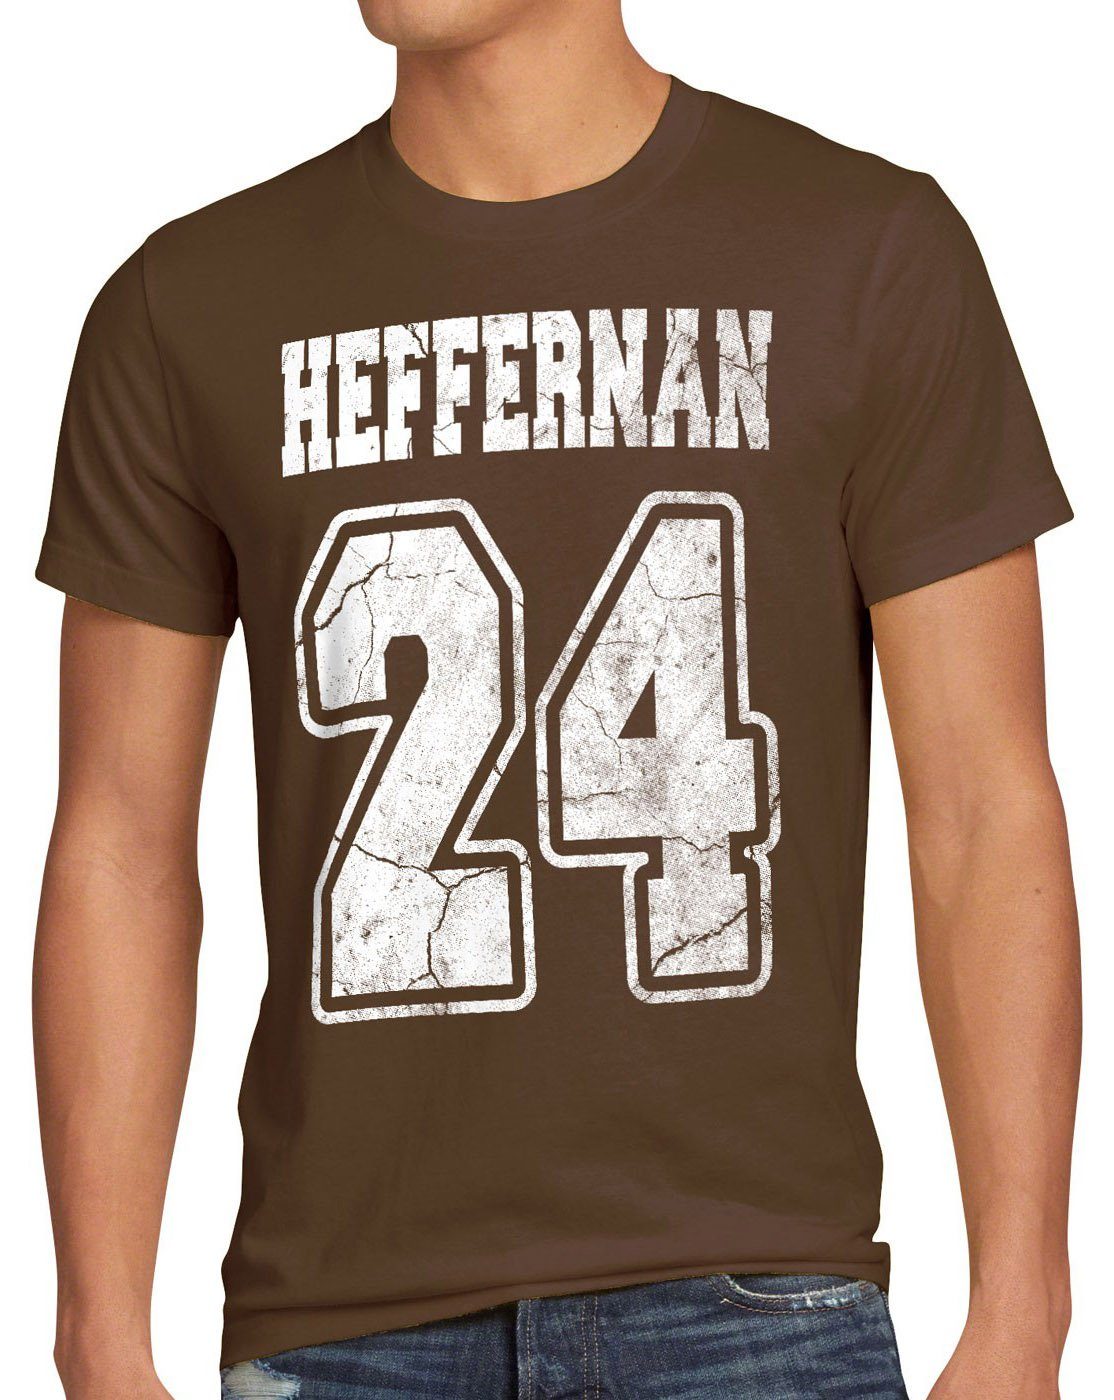 style3 Print-Shirt Herren T-Shirt Heffernan 24 doug the king of IPS coopers queens sitcom spooner braun